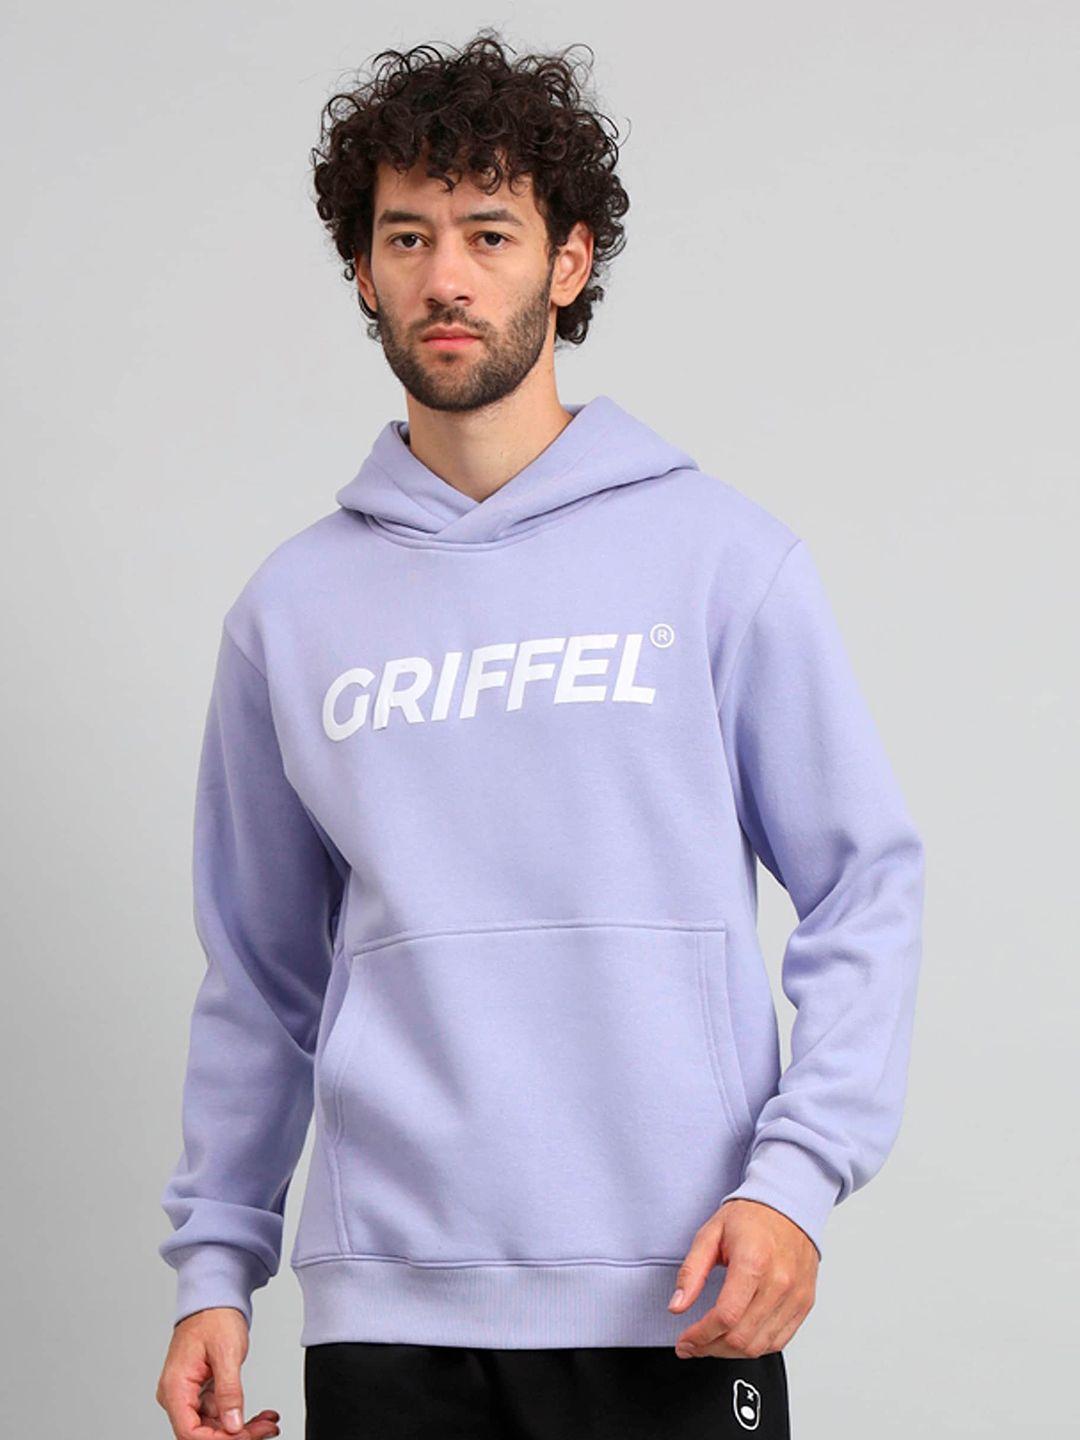 griffel typography printed hooded fleece sweatshirt